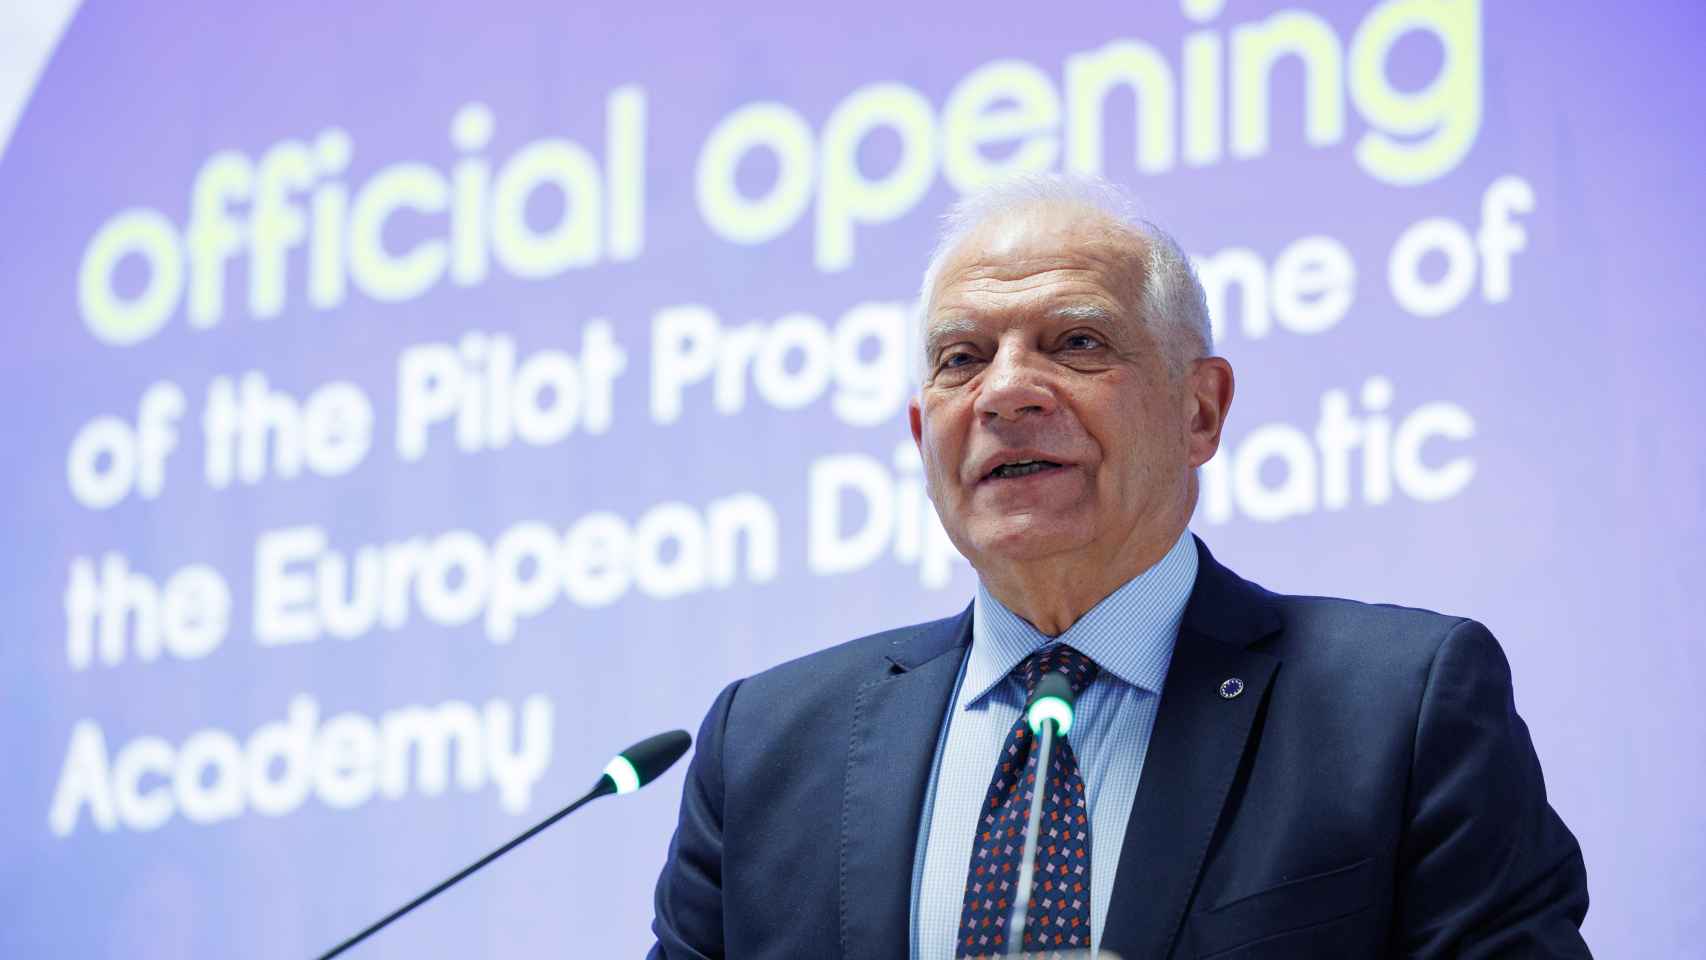 El jefe de la diplomacia europea, Josep Borrell, durante el discurso en el que utilizó la polémica metáfora